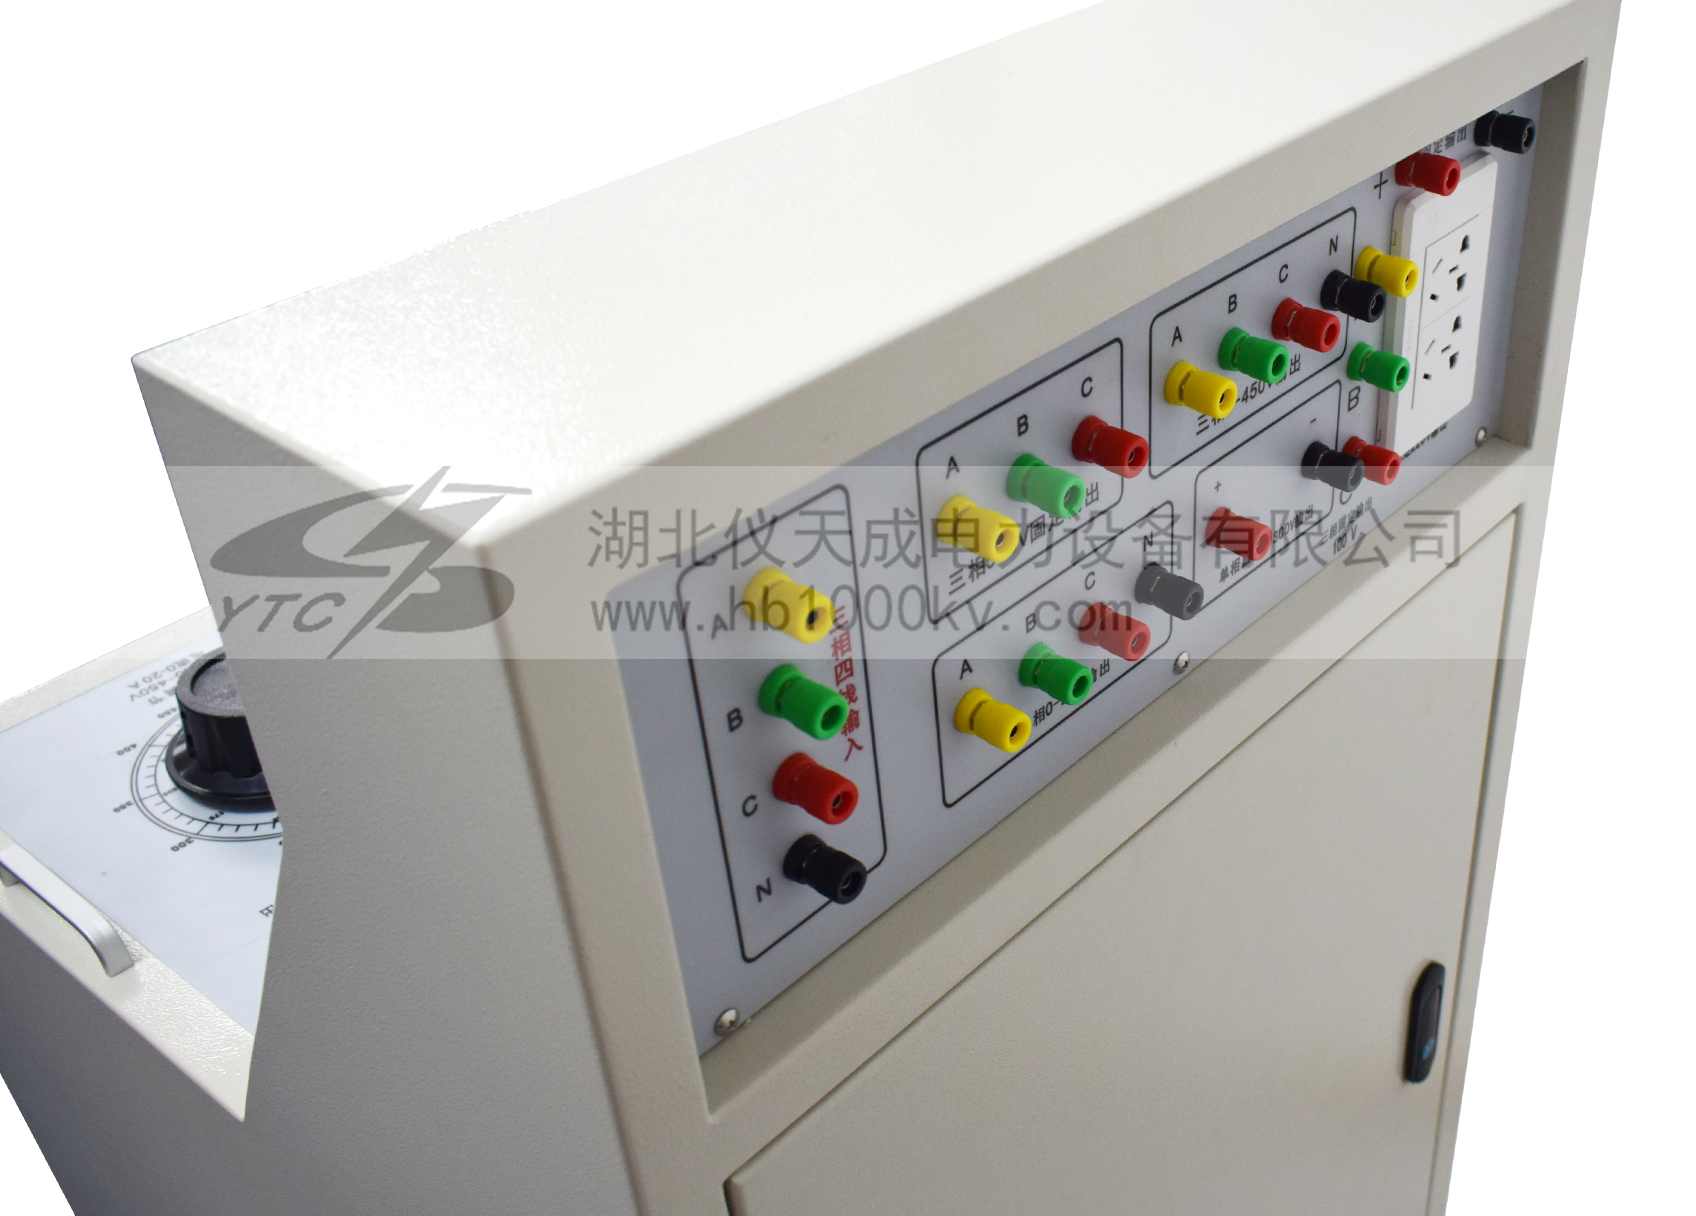 YTC1106高低壓開關櫃通電試驗台主機細節